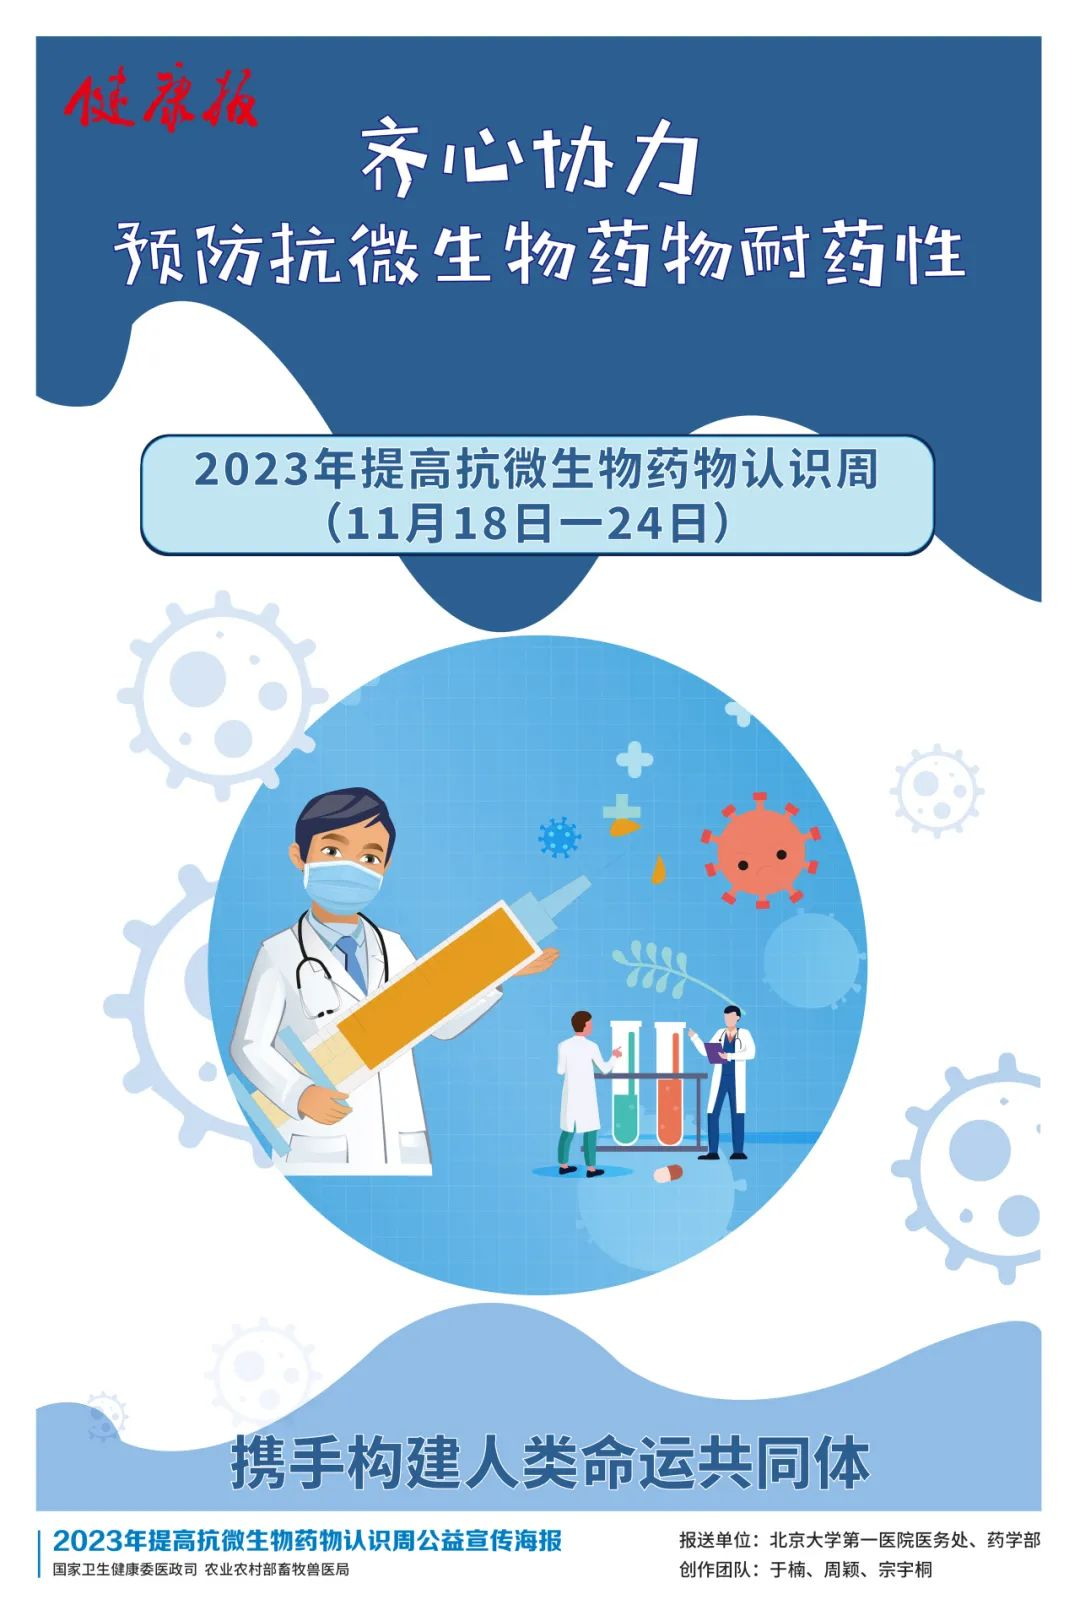 2023年提高抗微生物药物认识周：齐心协力预防抗微生物药物耐药性